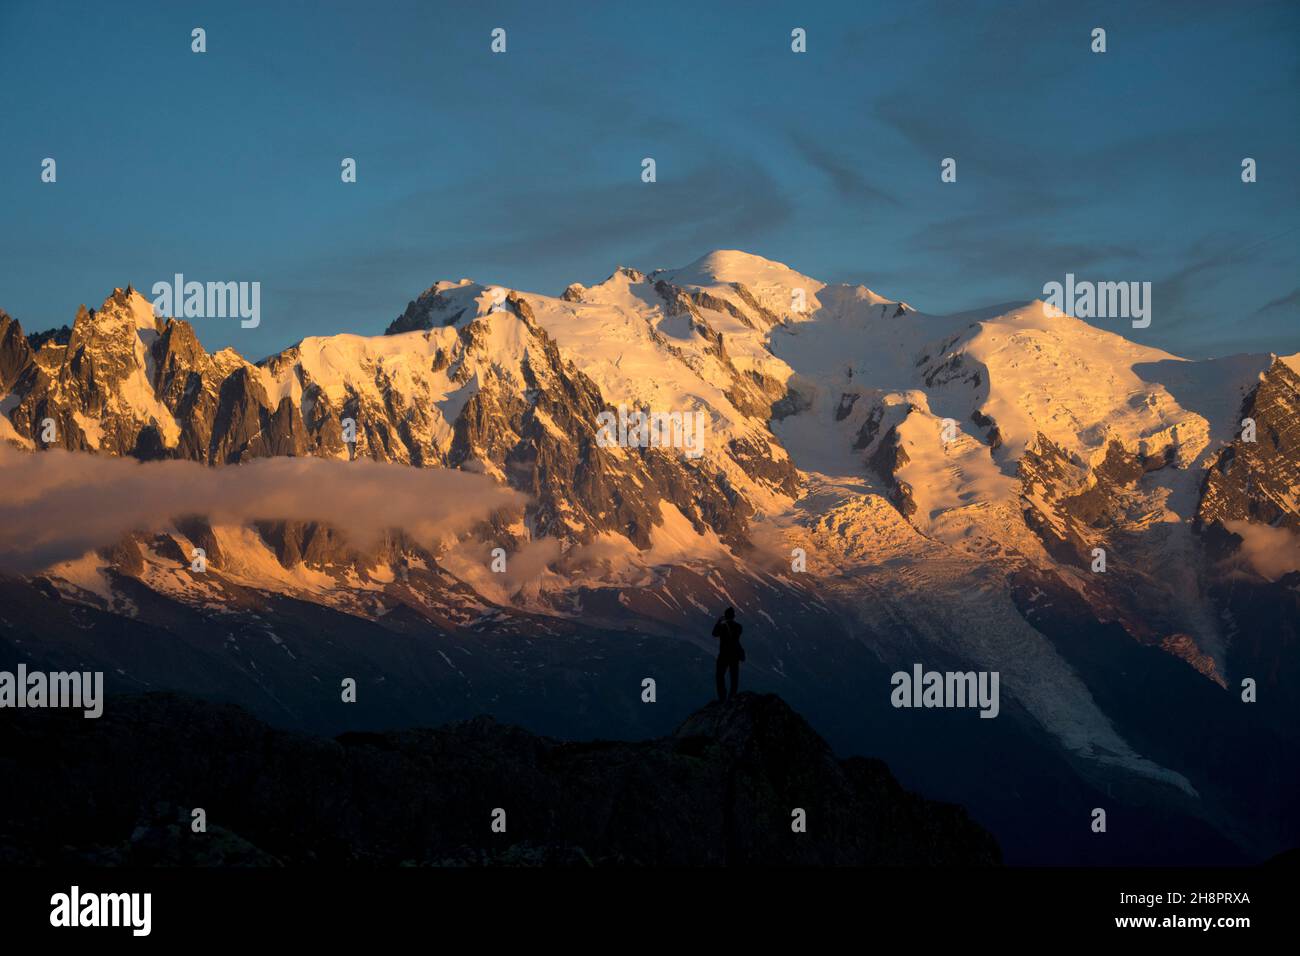 Grandioses Alpenglühen in den französischen Alpen beim Mont Blanc, dem höchsten Berg Europas Stock Photo